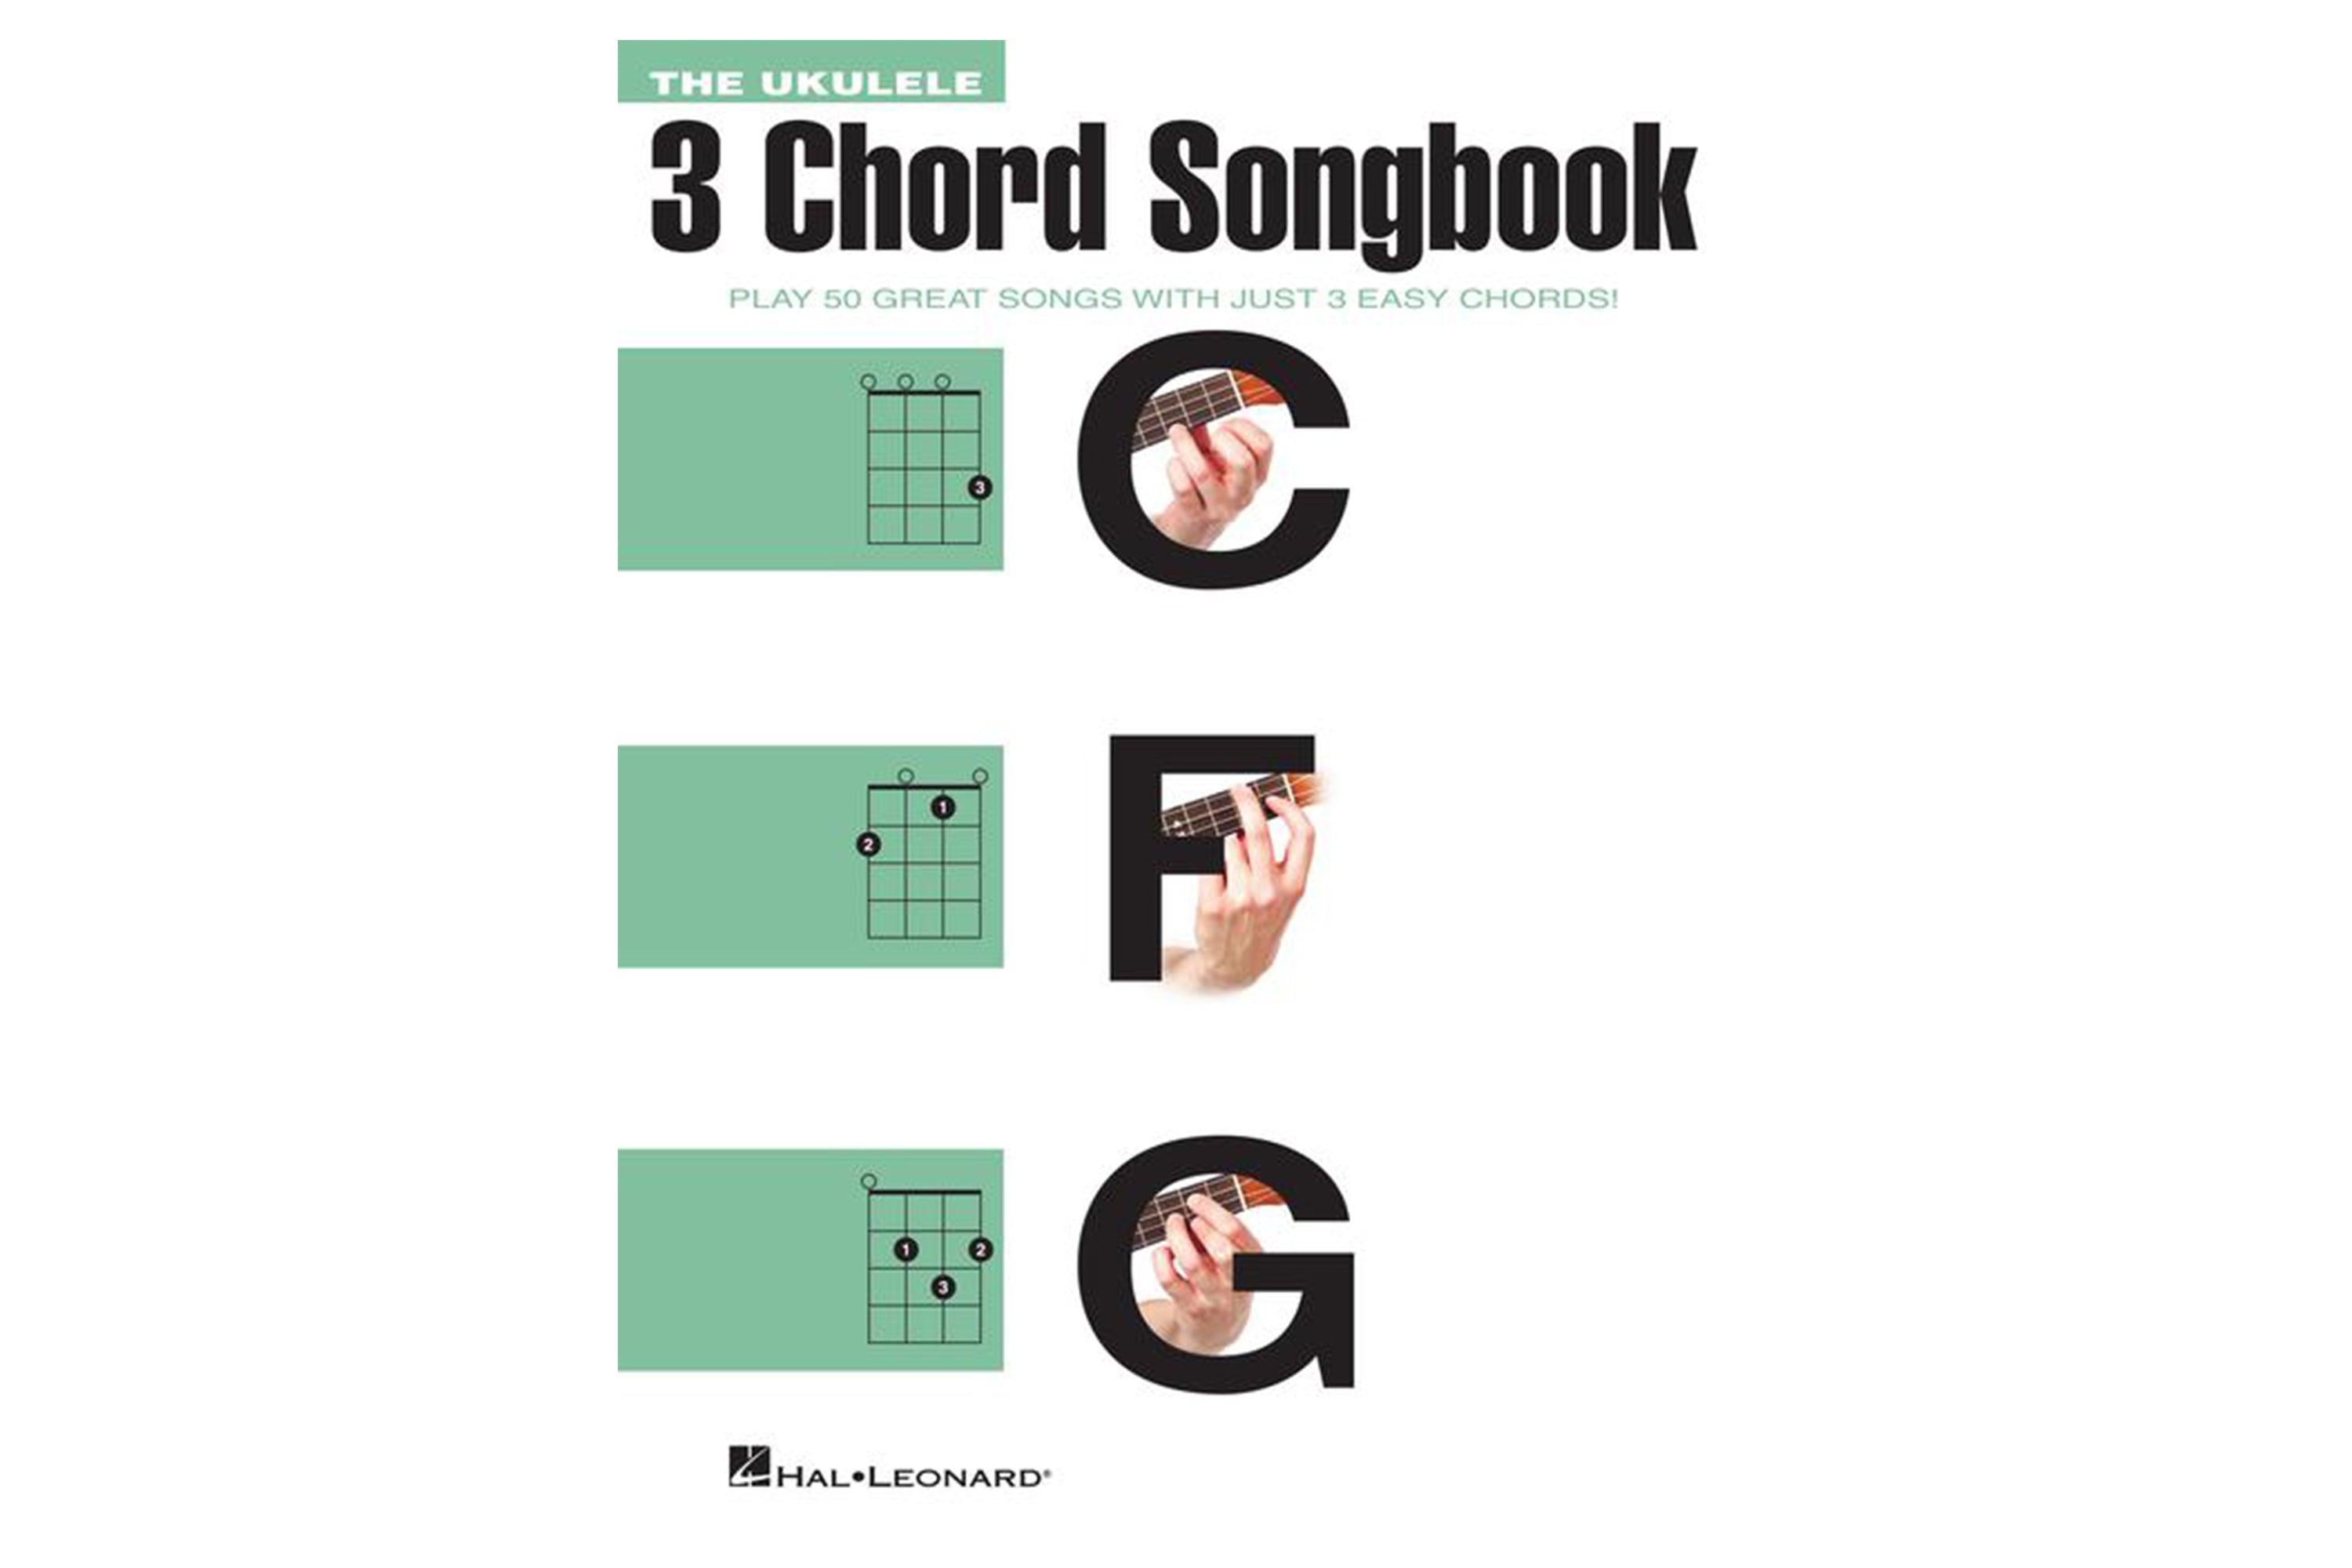 The Ukulele 3 Chord Songbook